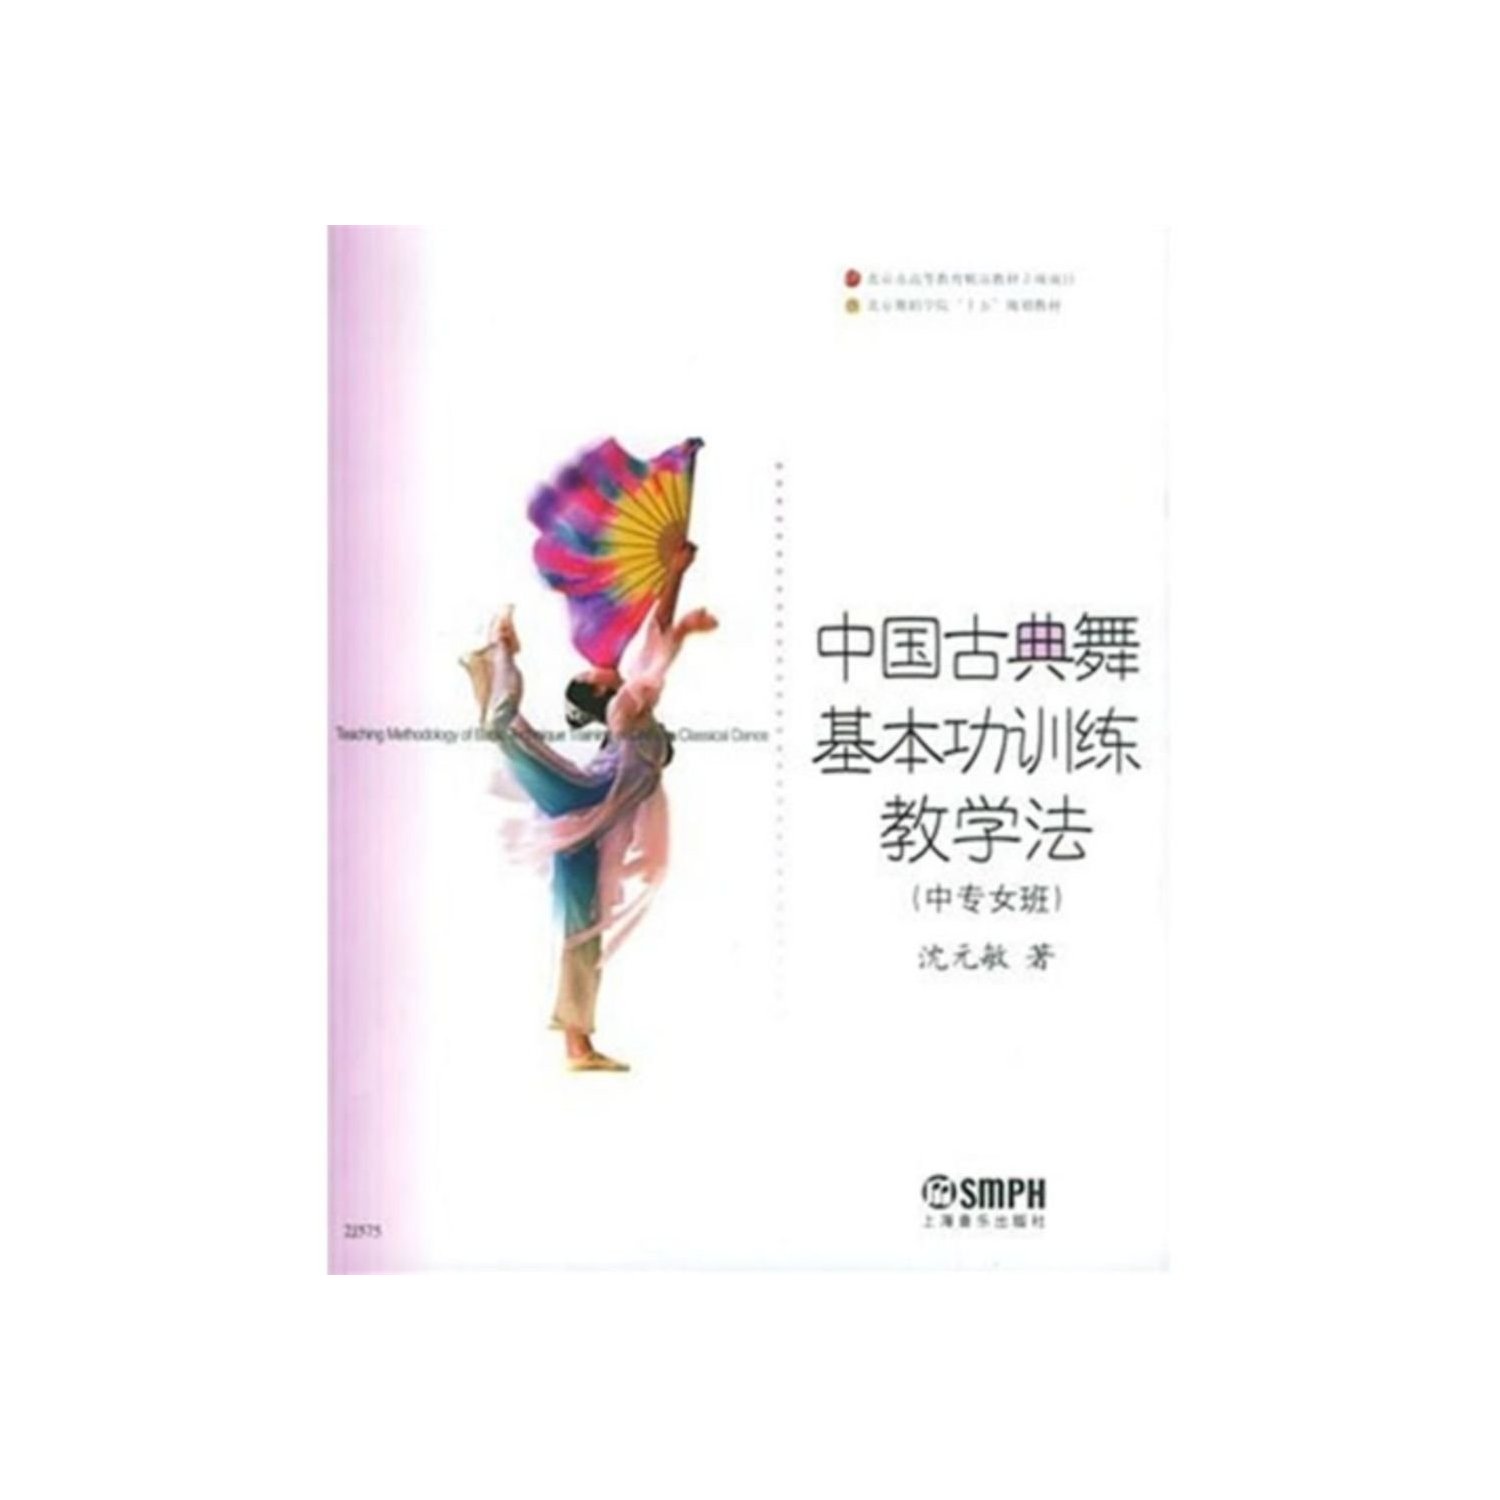 京舞蹈学院舞蹈教材丛书:中国古典舞基本功训